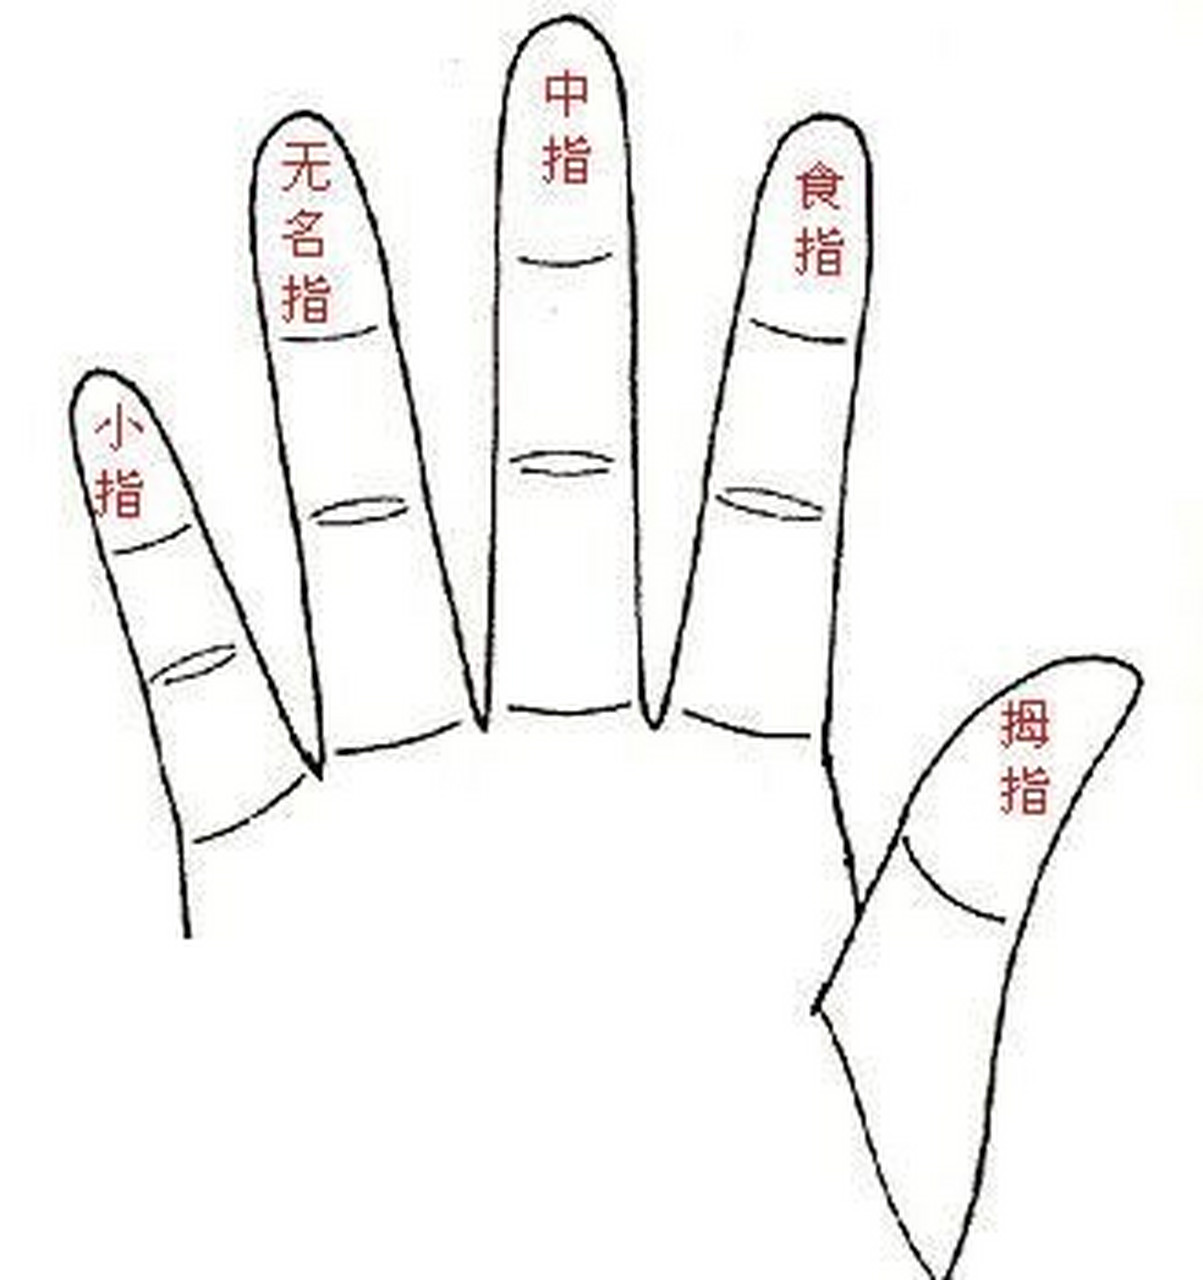 五个手指头代表的身份 大拇指:父母 食指:朋友,同事 中指:自己 无名指